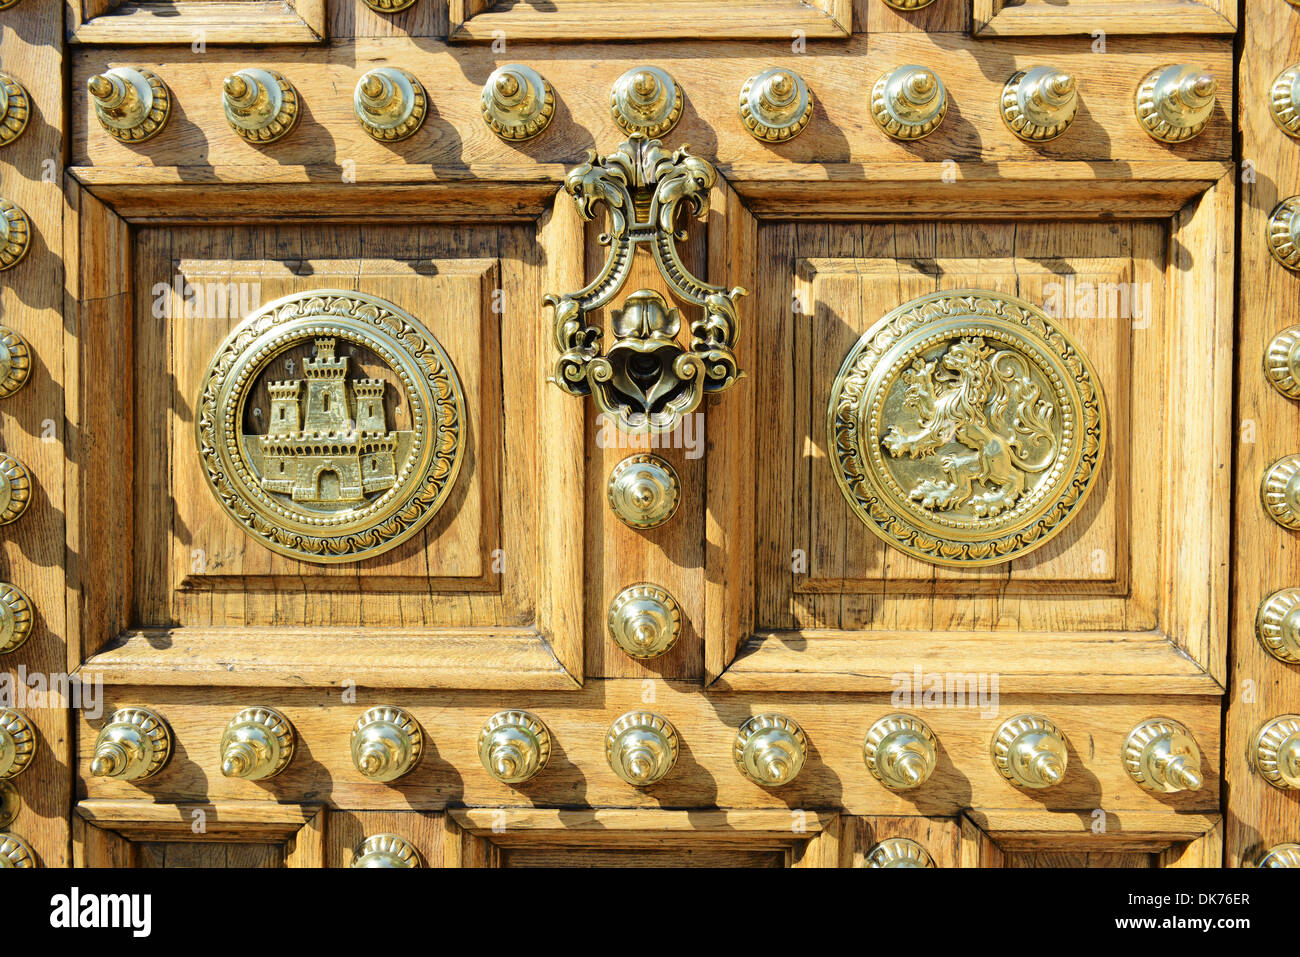 Orné restauré porte de l'Palacio De Capitania General De Barcelone, ancien couvent de la Catalogne, Barcelone, Espagne Banque D'Images